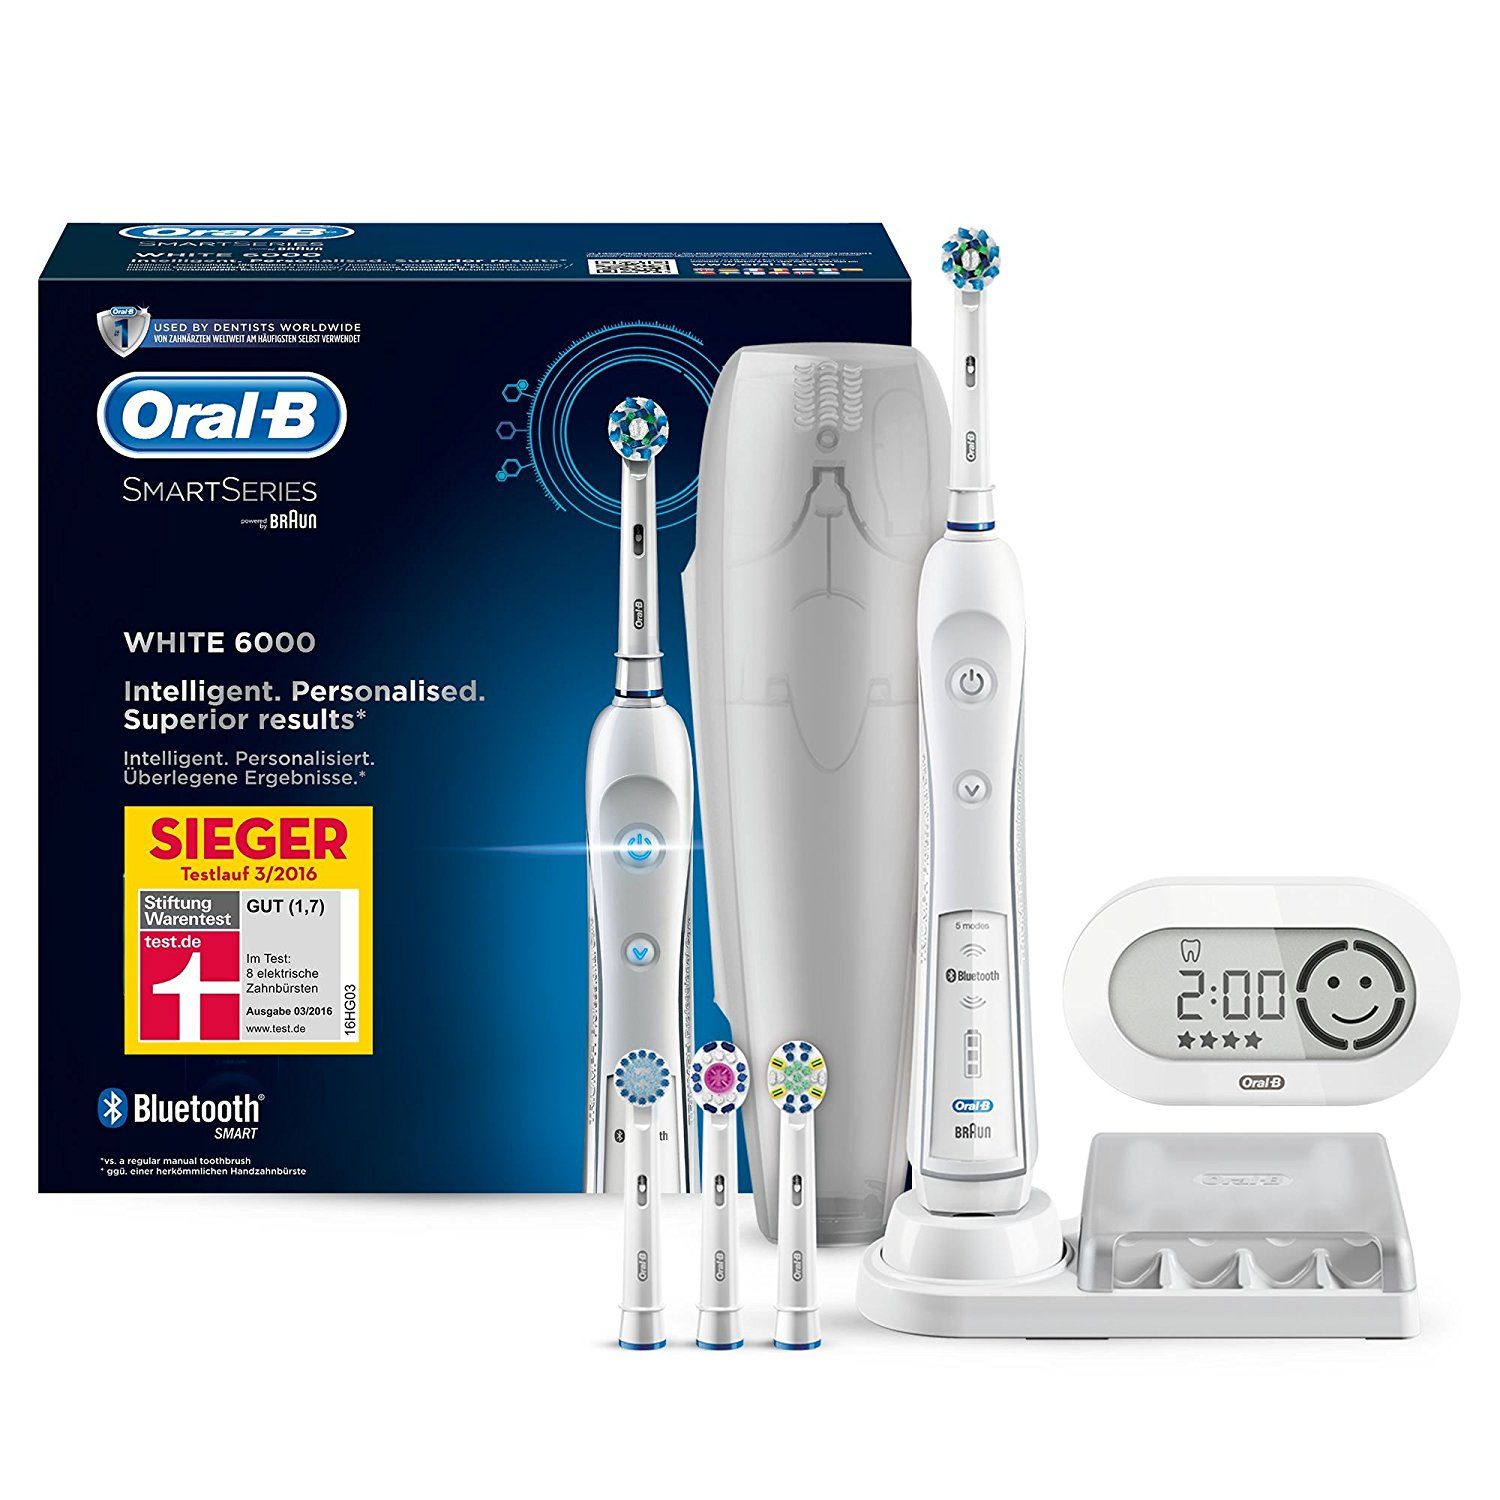 Oral-B SmartSeries 6000 - Test-Übersicht & Funktionen der elektrischen Zahnbürste